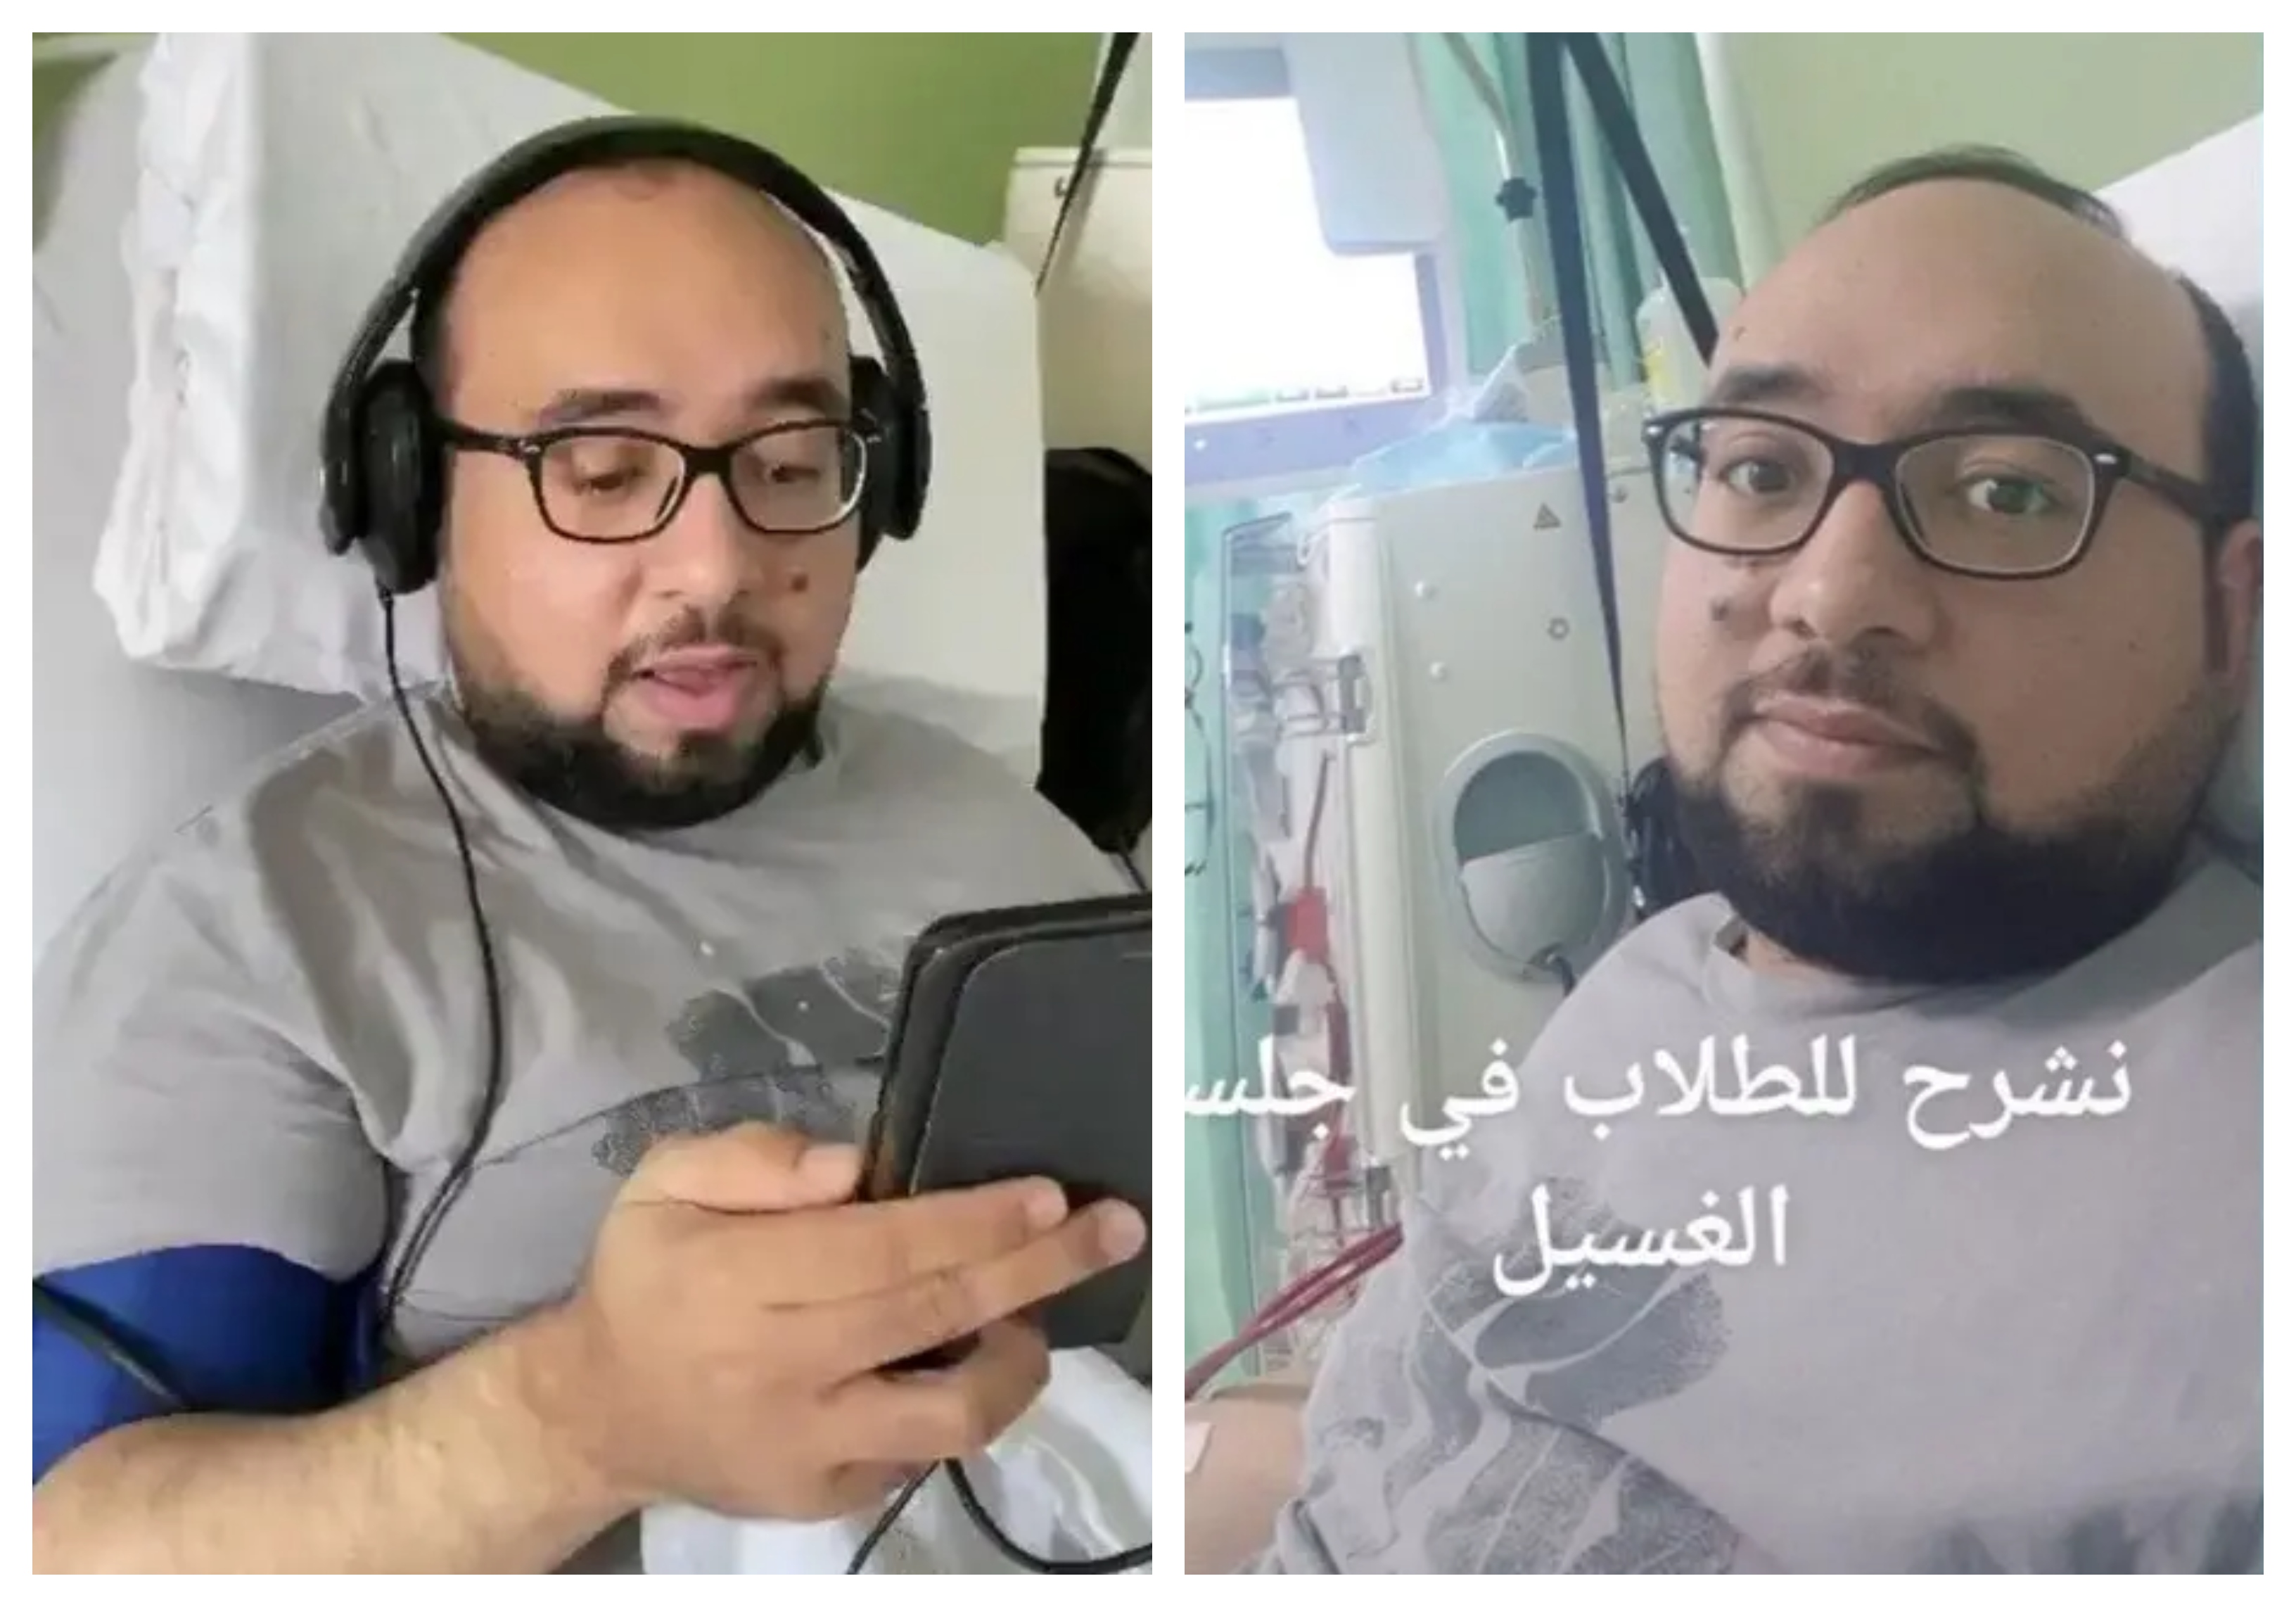 "أياماً وشهوراً أشاهد كوابيس".. معلم سعودي يروي معاناته من مآسي كورونا ودخوله في غيبوبة 90 يوماً 